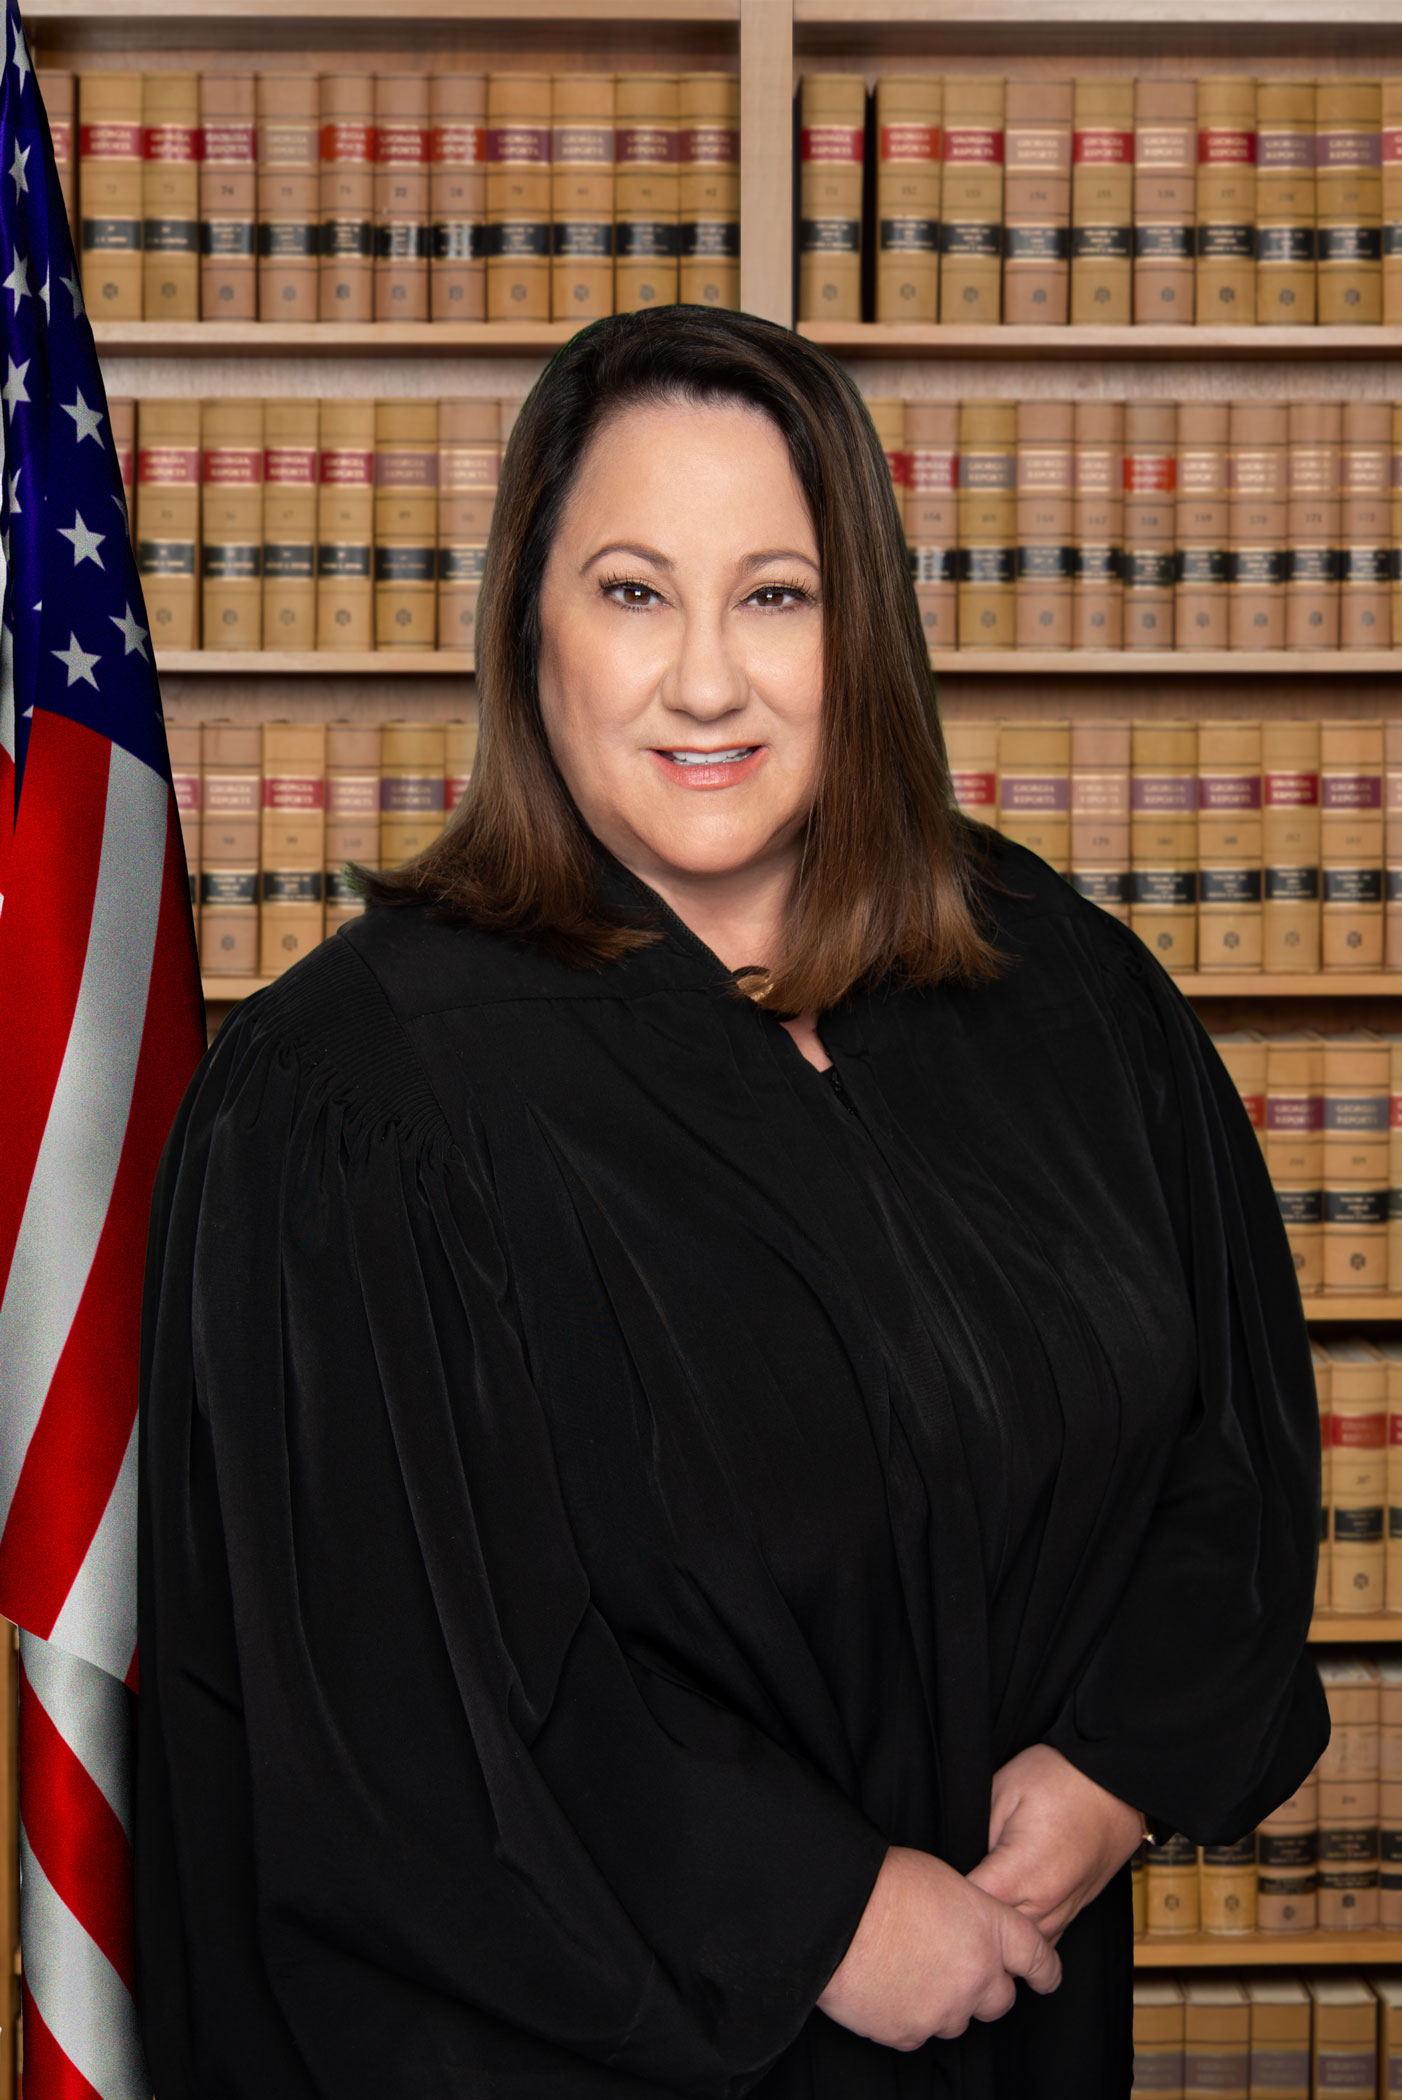 Judge Rachelle Carnesale